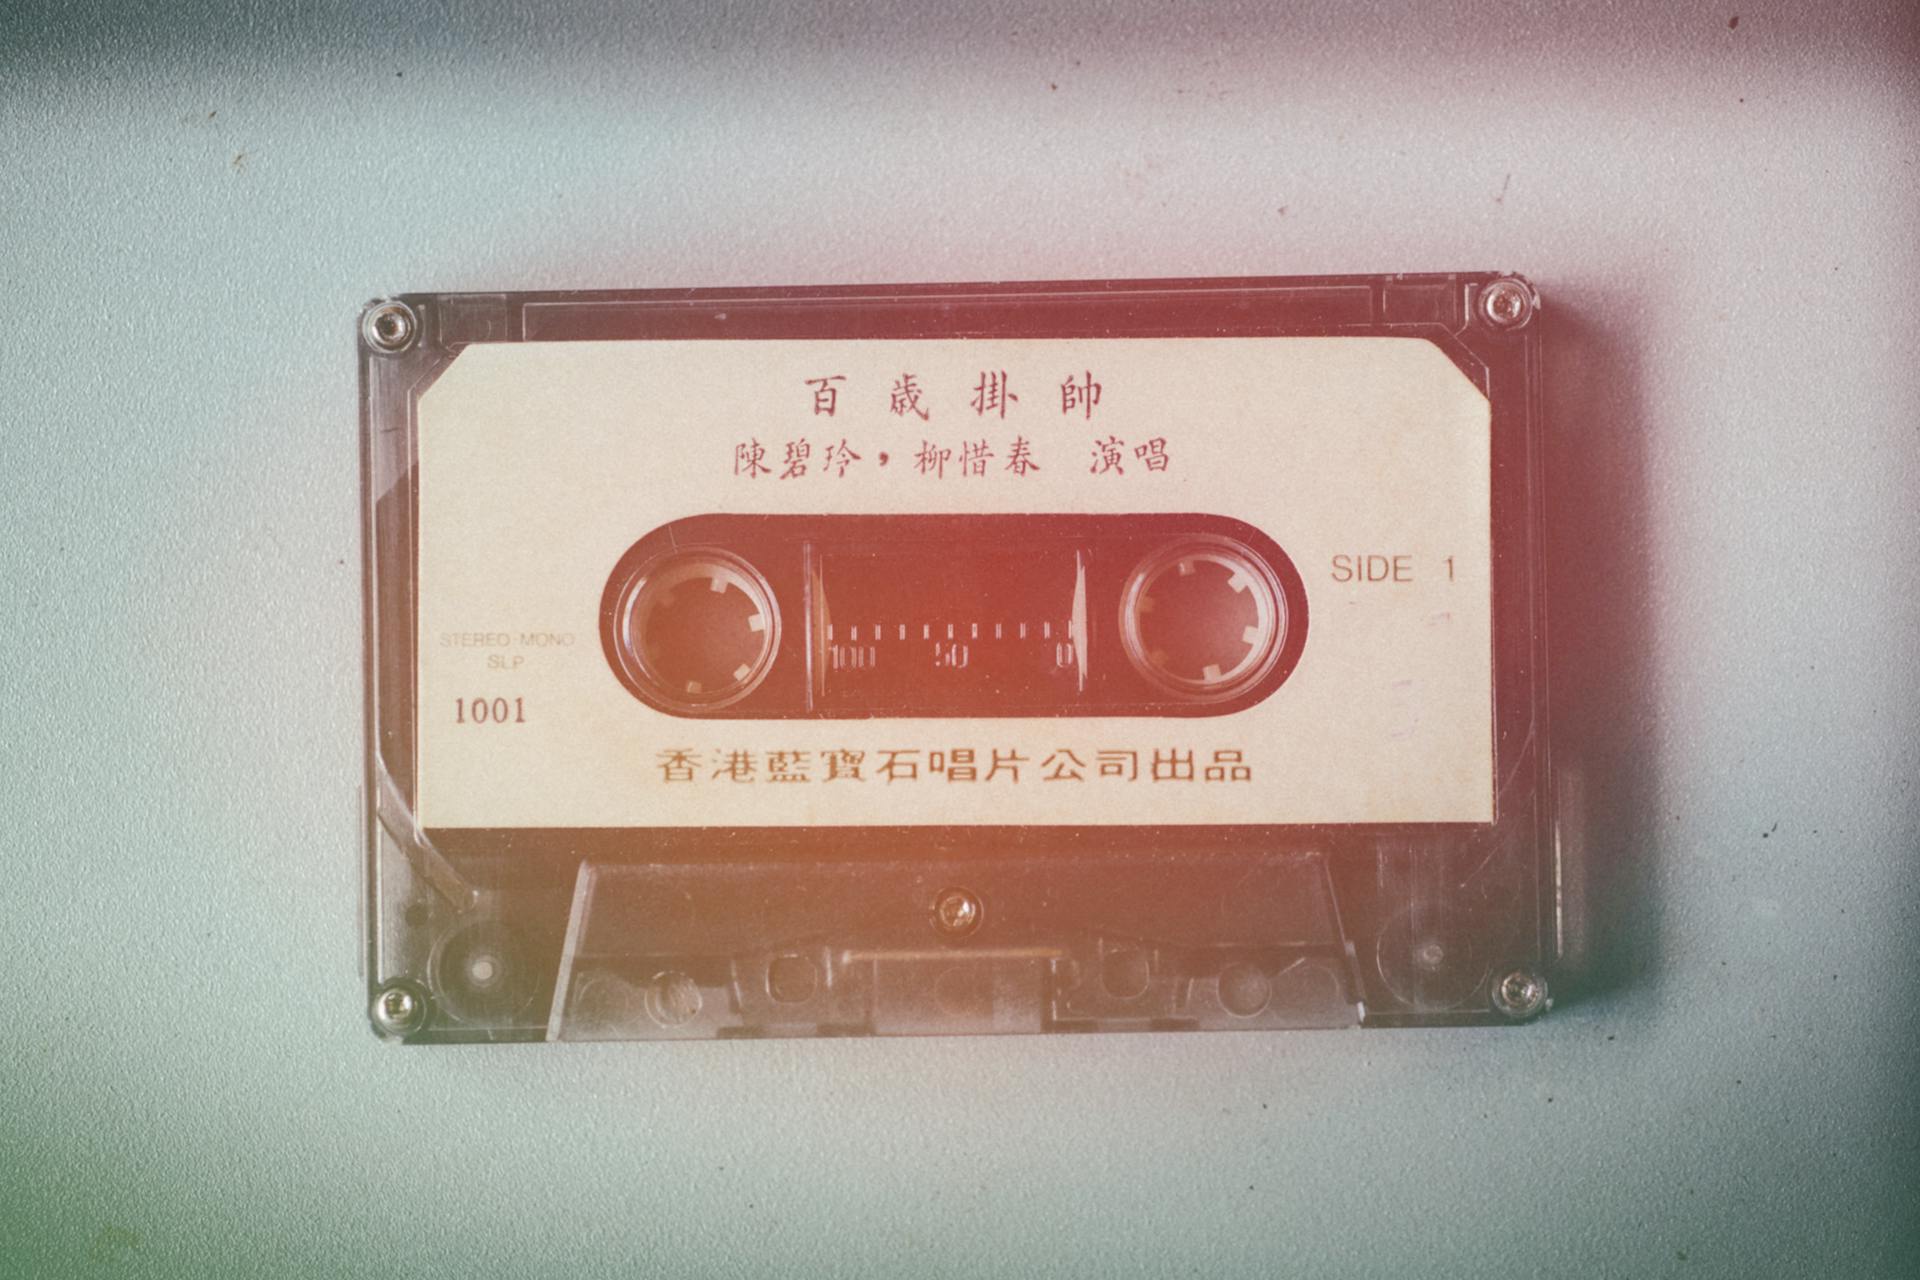 Black Cassette Tape